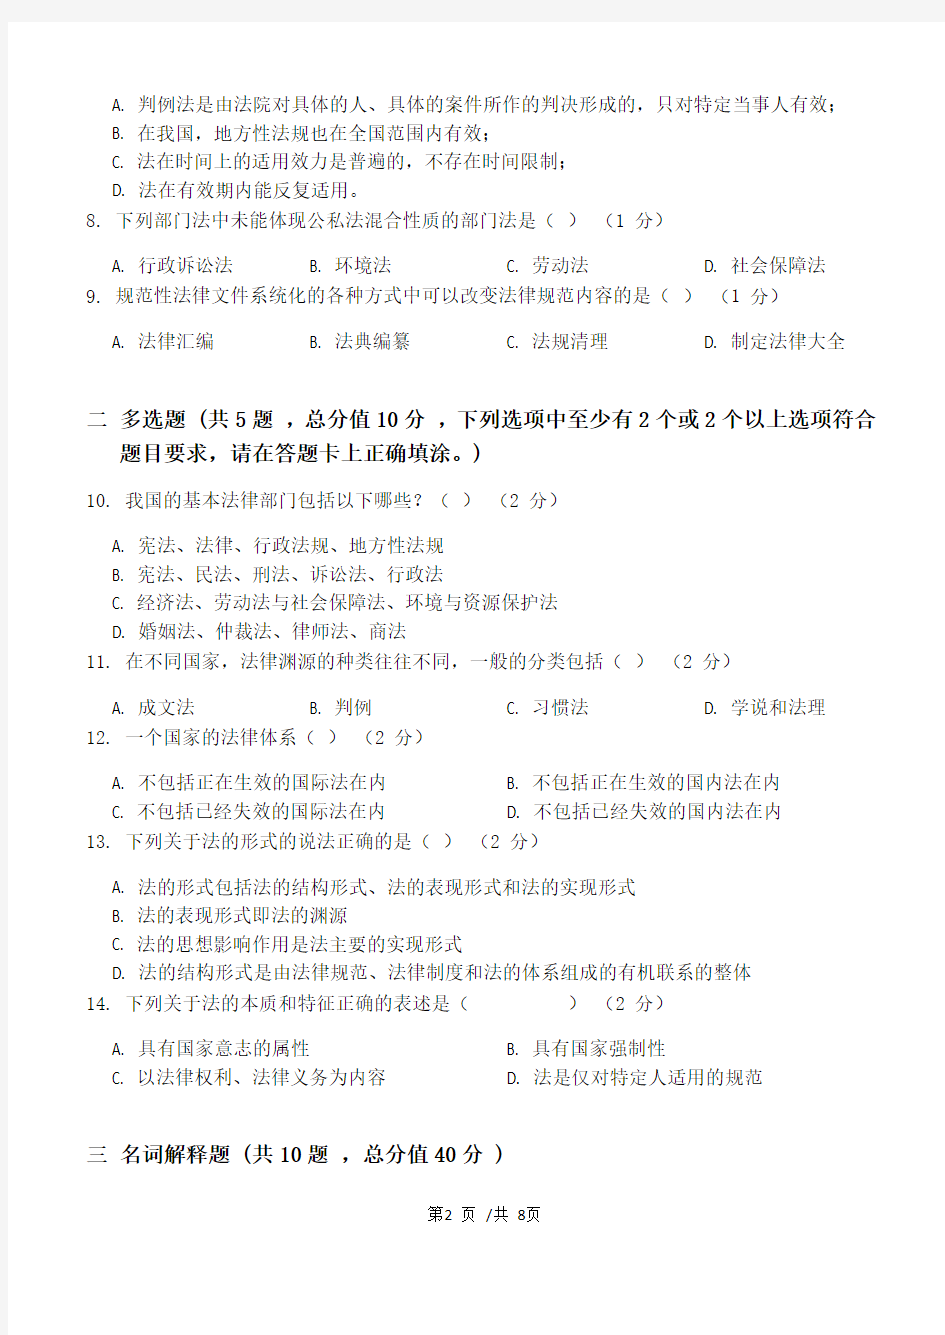 法理学第1阶段练习题  2020年上半年  江南大学  考试题库及答案  一科共有三个阶段,这是其中一个阶段